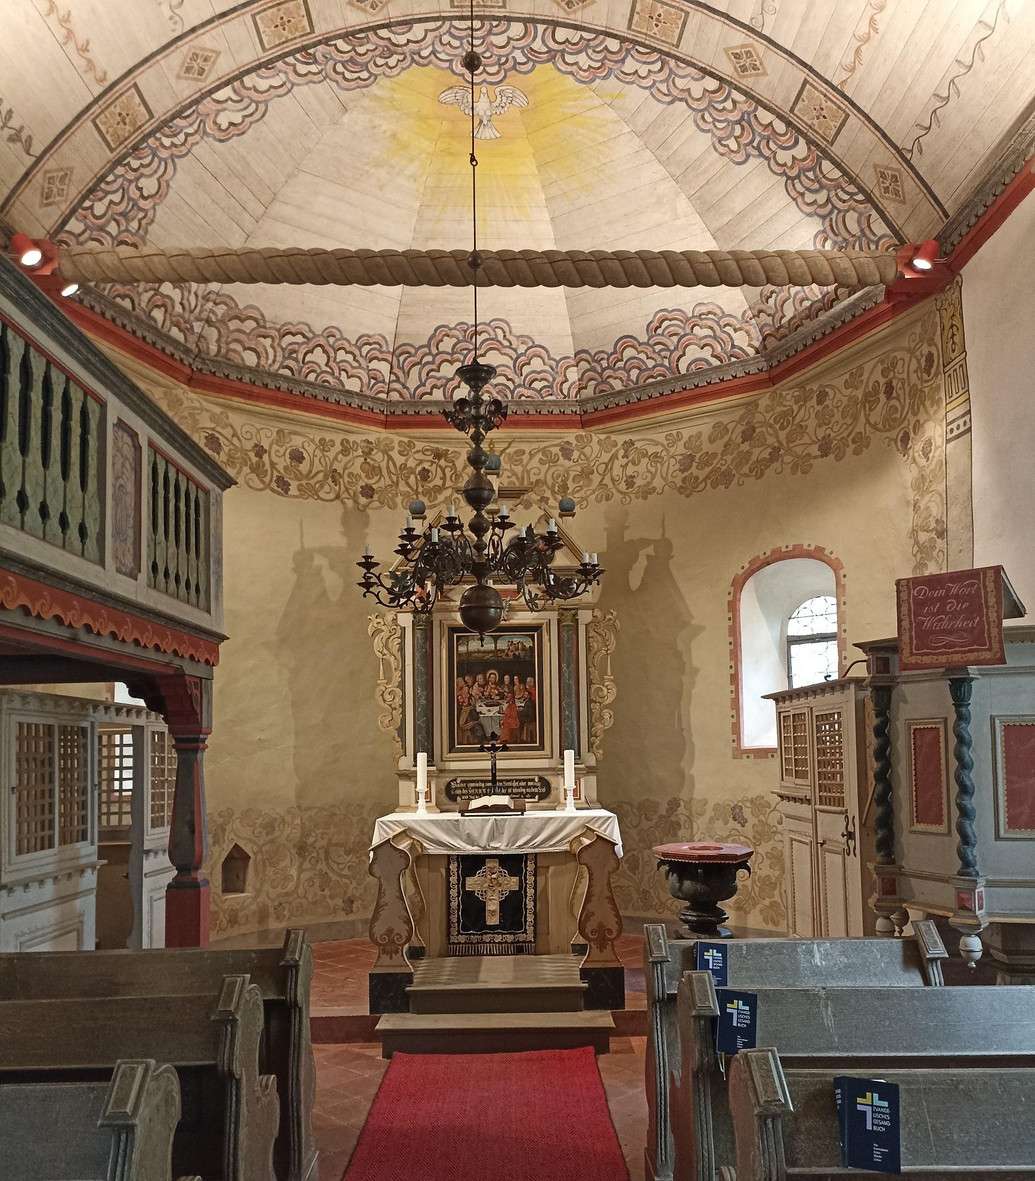 Auf dem Bild sieht man den Altar im Innenraum der Kirche in Zixdorf.